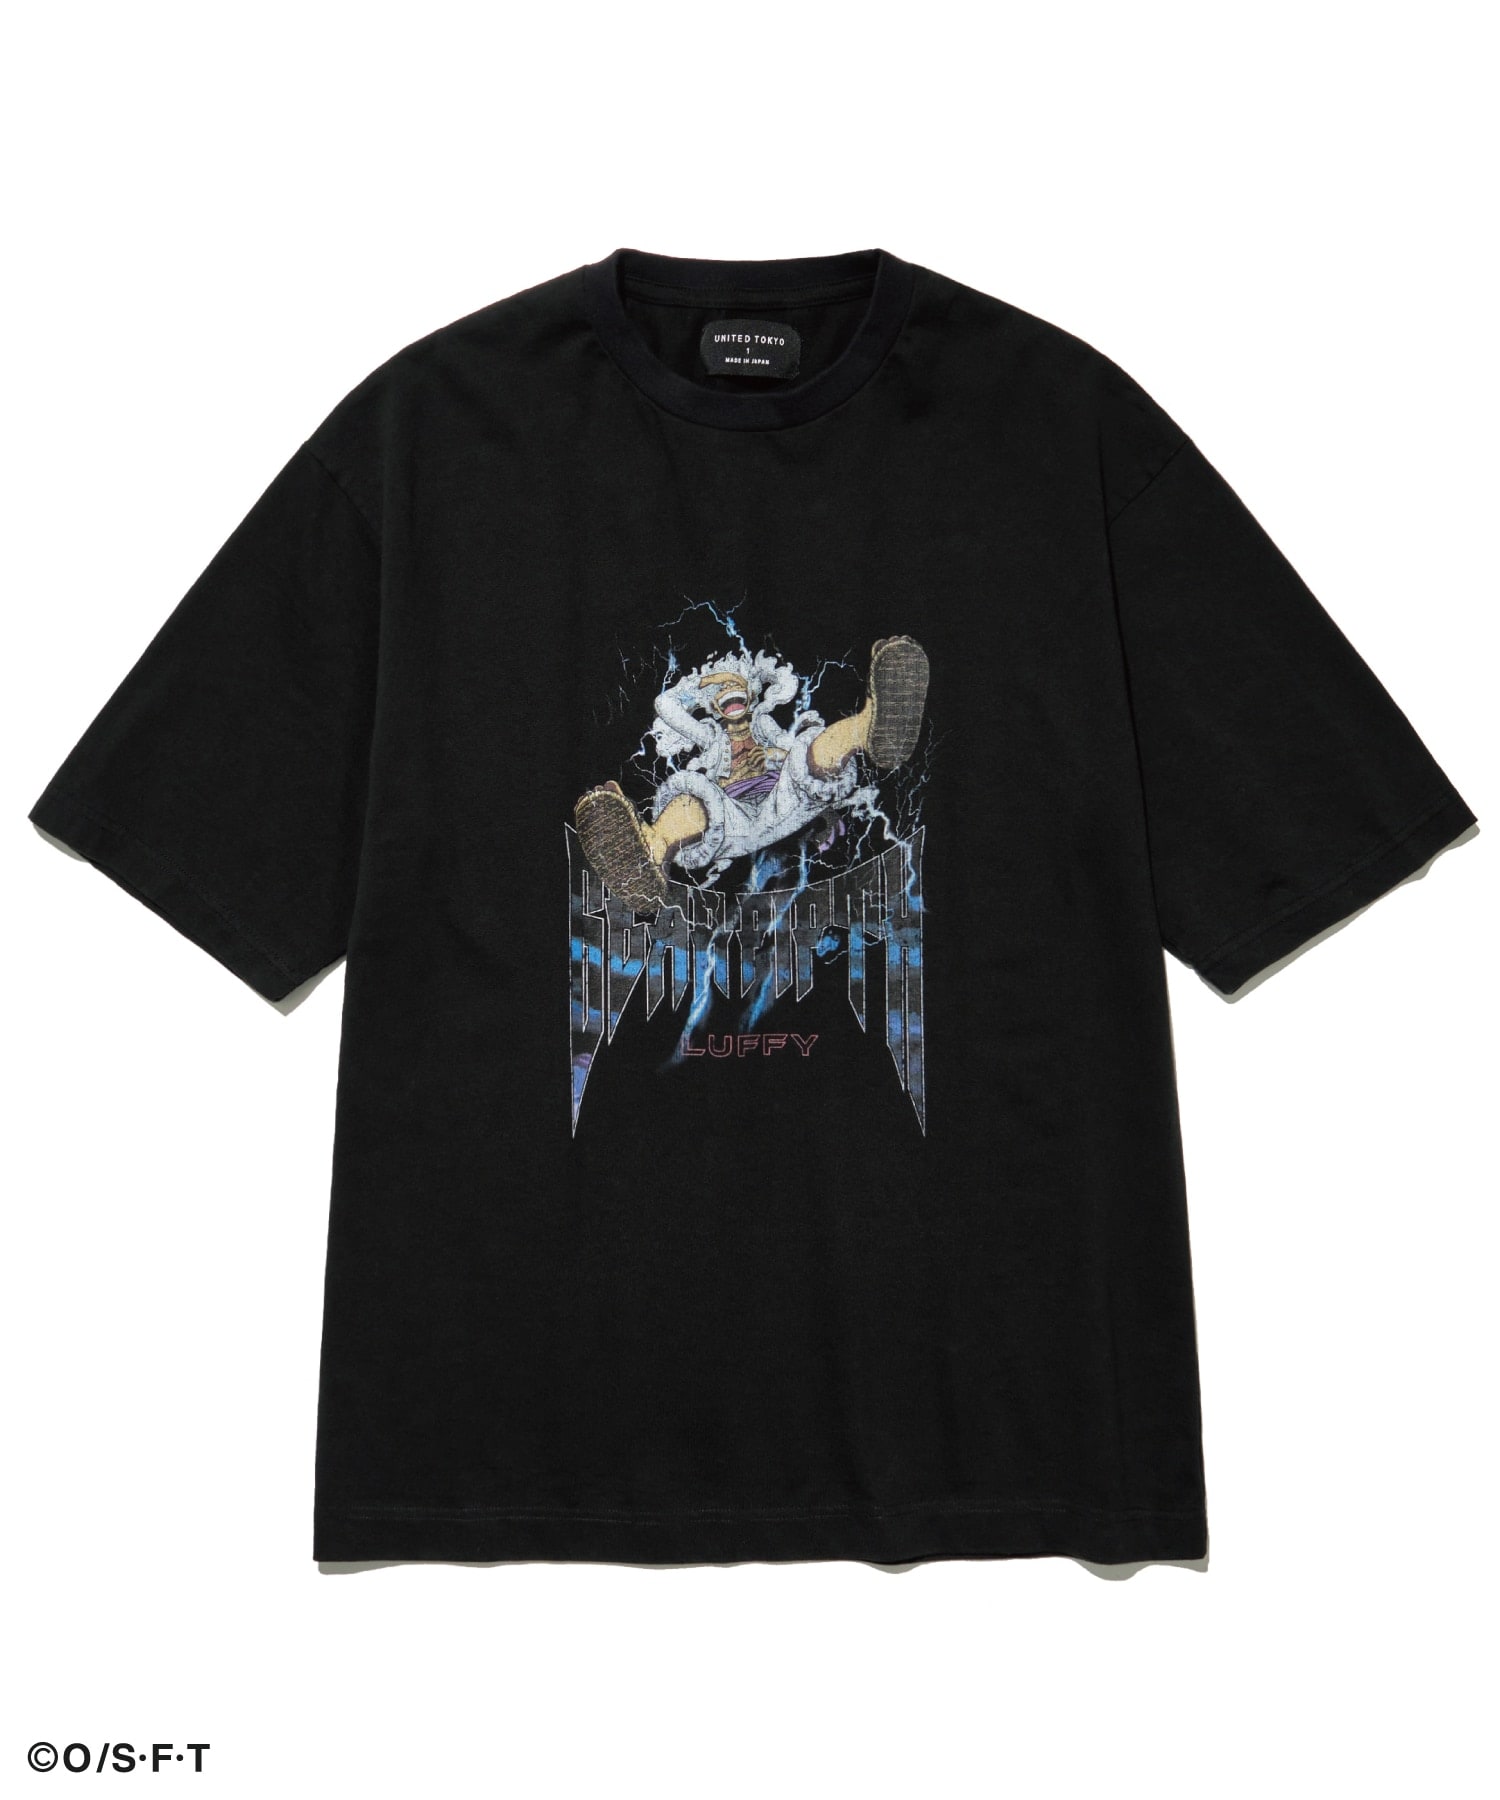 ONE PIECE ルフィ ギア5 バンド Tシャツ UNITED TOKYO12000円はいかがでしょうか